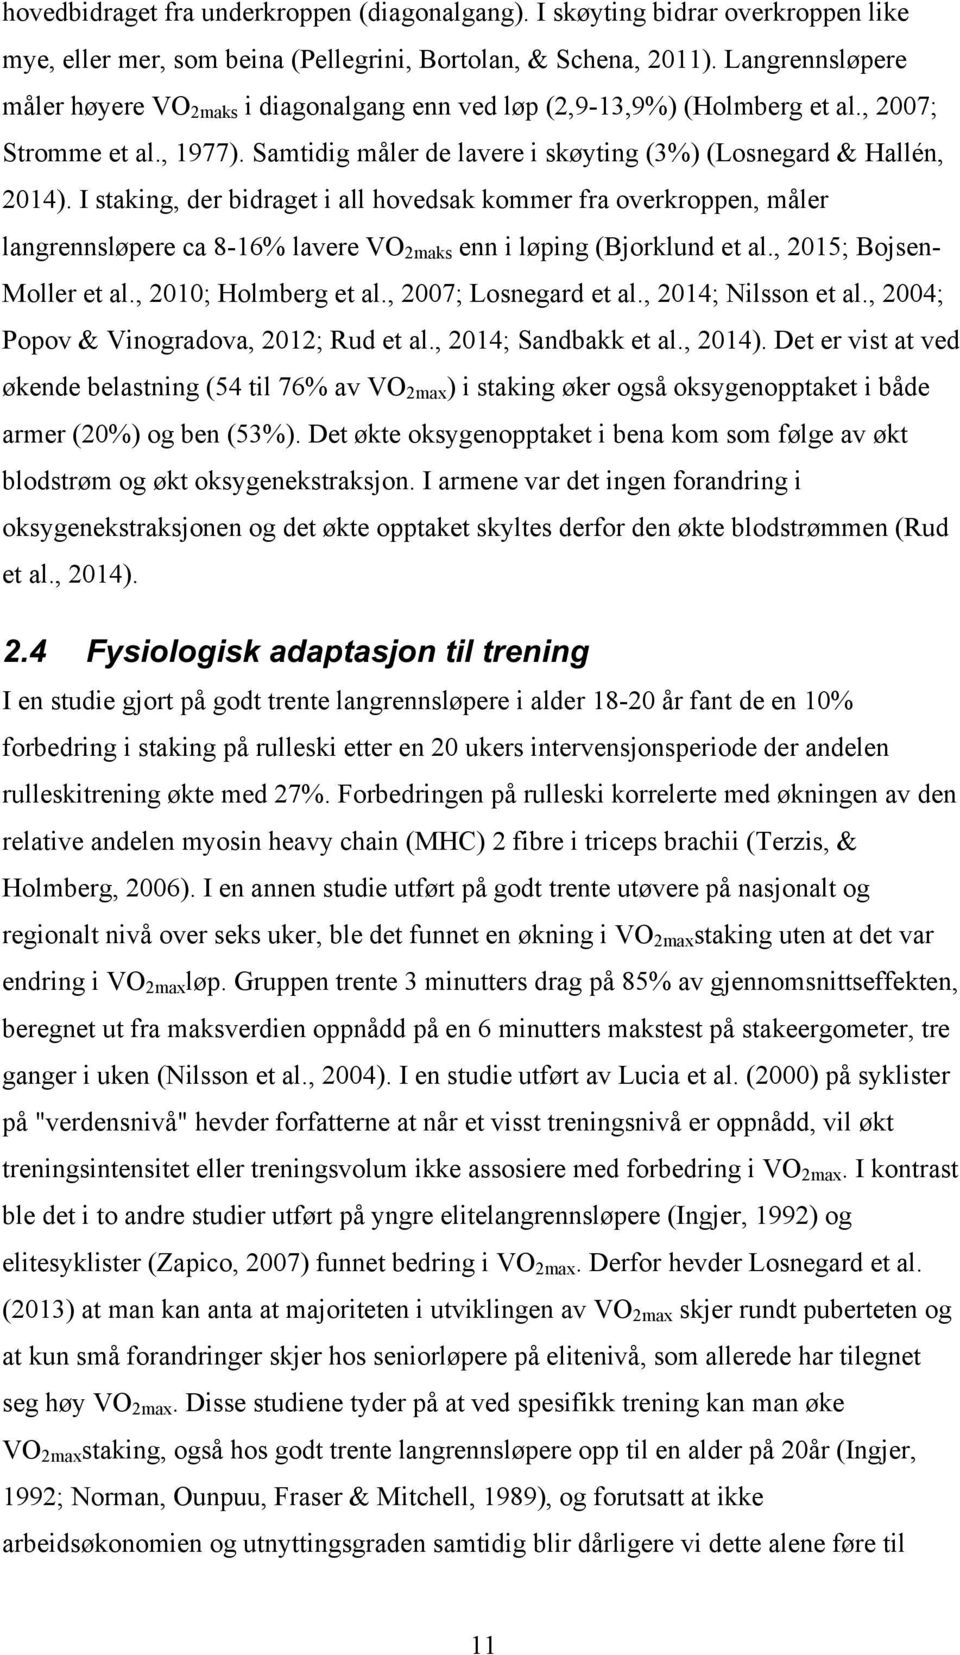 I staking, der bidraget i all hovedsak kommer fra overkroppen, måler langrennsløpere ca 8-16% lavere VO 2maks enn i løping (Bjorklund et al., 2015; Bojsen- Moller et al., 2010; Holmberg et al.